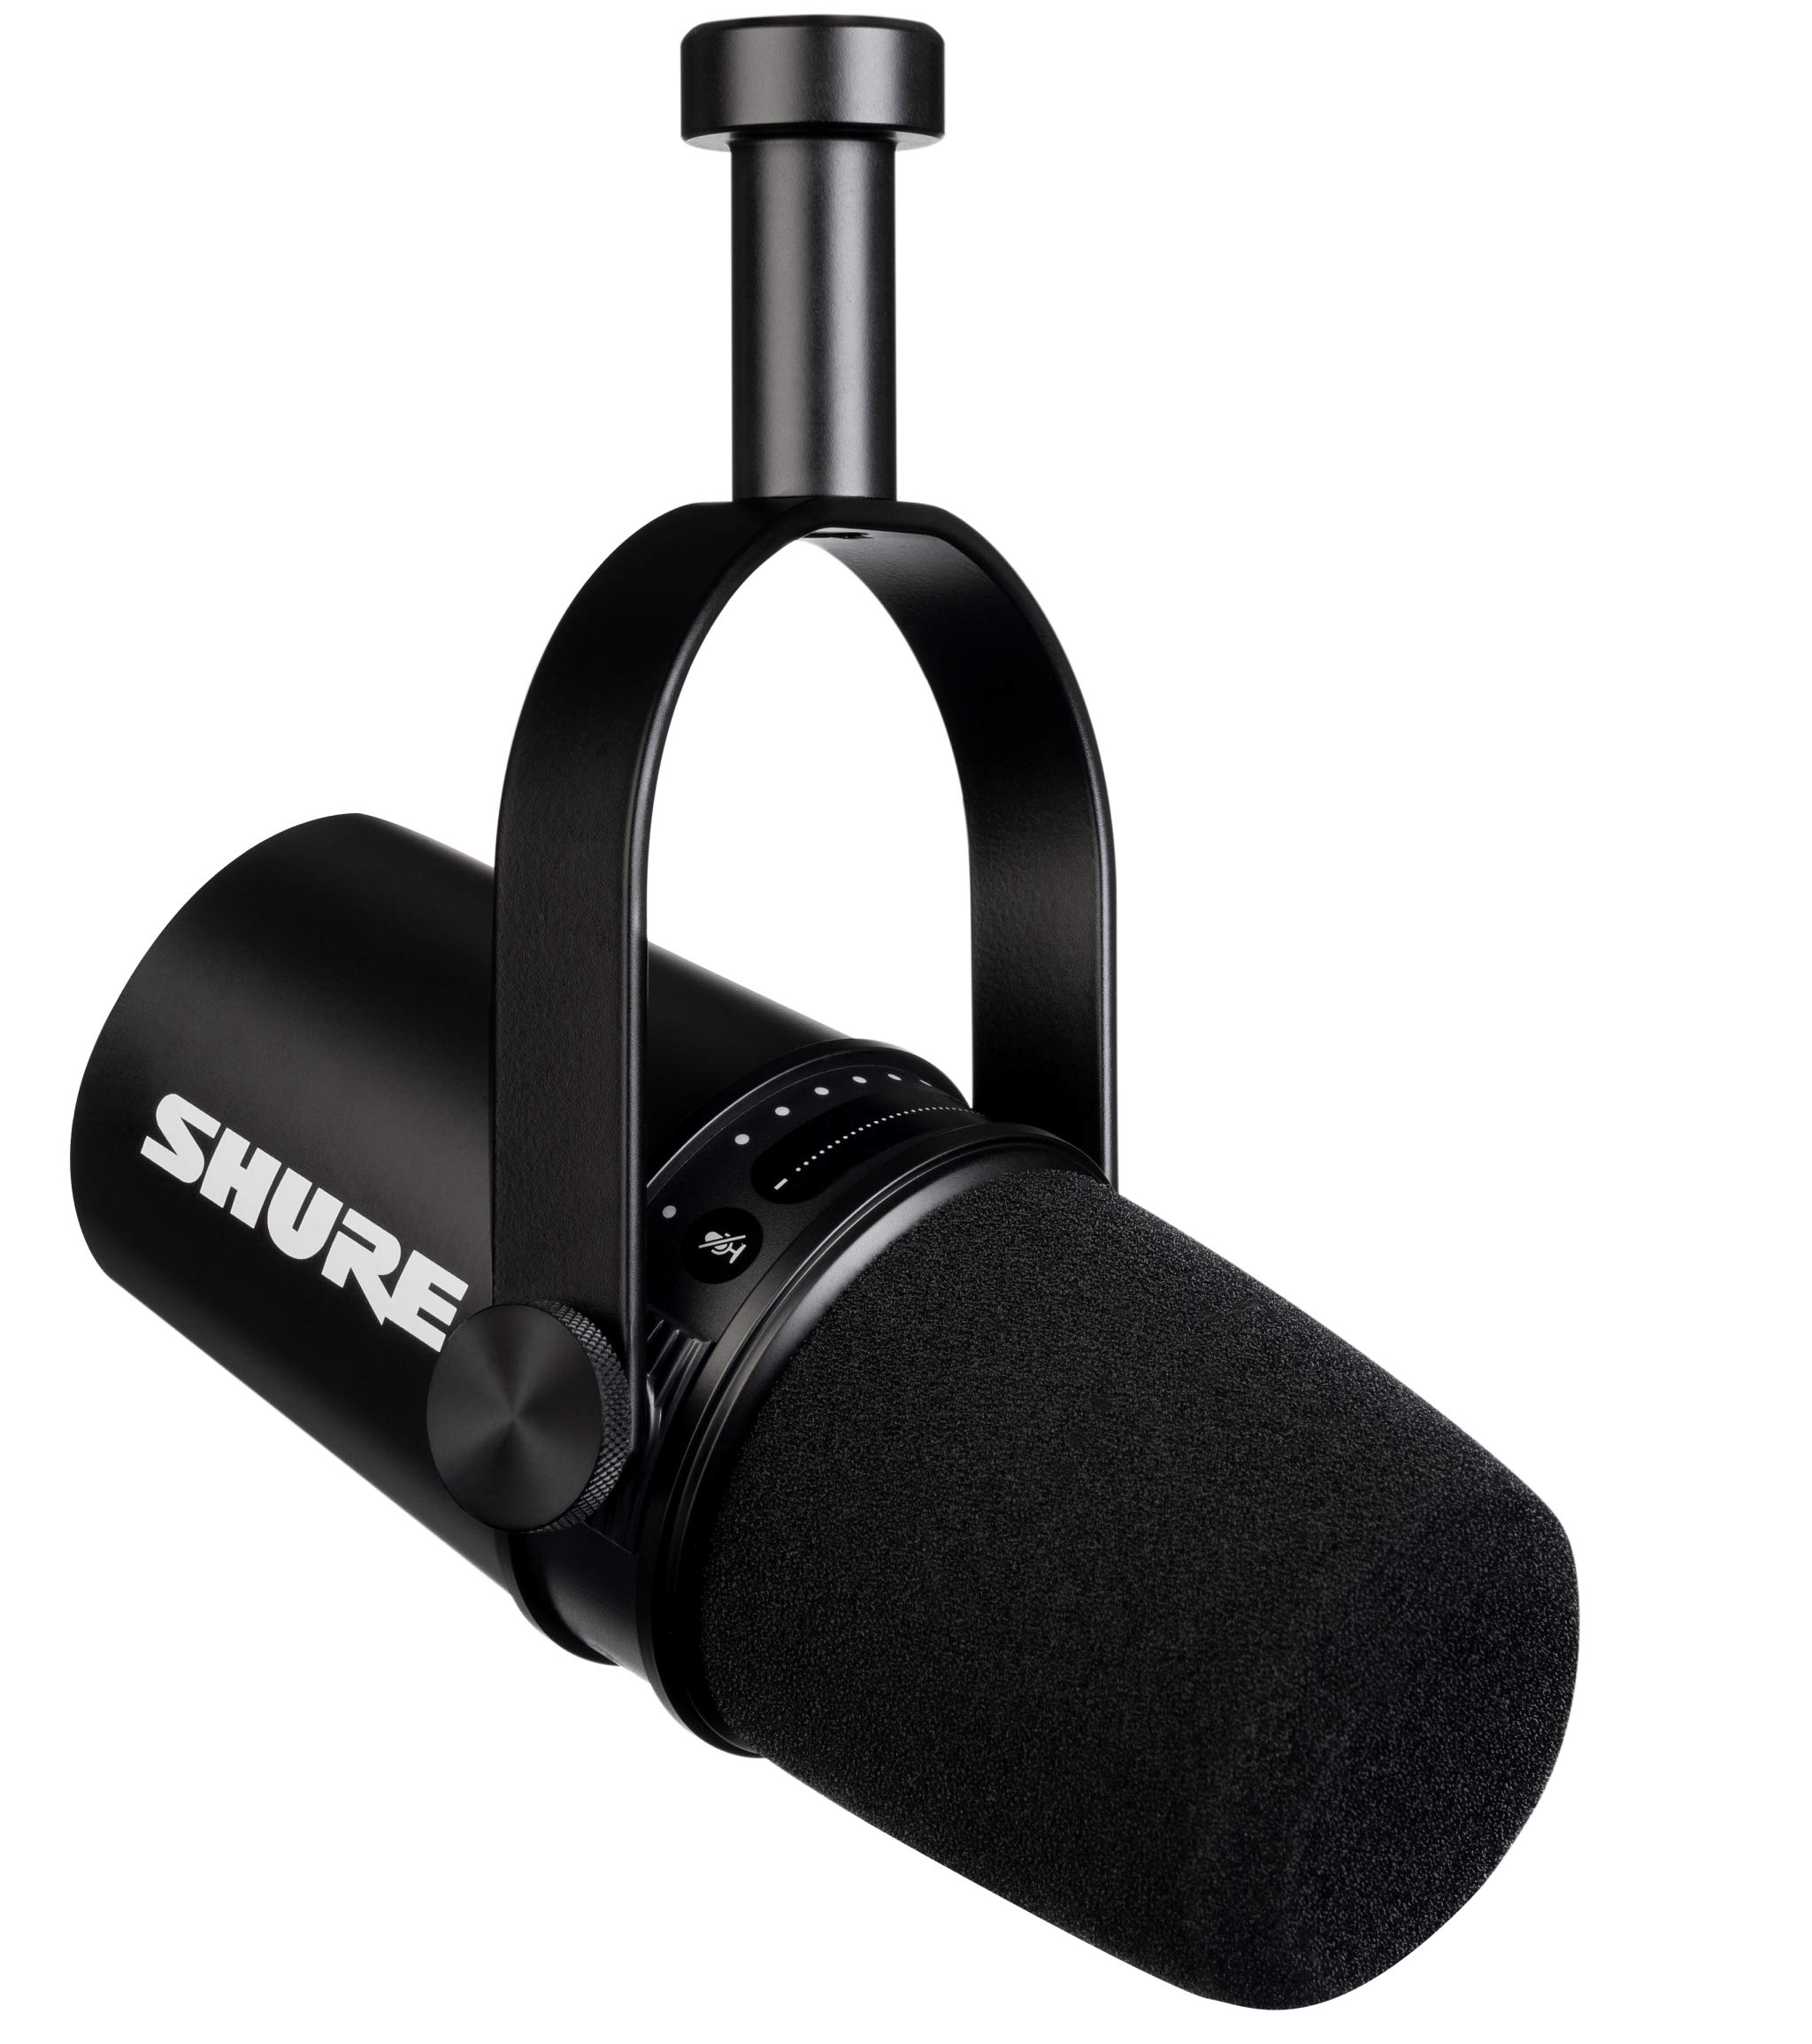 acheter Shure MV7 USB Podcast Microphone pour Le Podcasting, L´Enregistrement, Le Streaming et Les Jeux en Direct, Sortie Casque Intégrée, Micro Dynamique USB/XLR Entièrement Métallique - Noir Vr9mjAaa7 pas cher